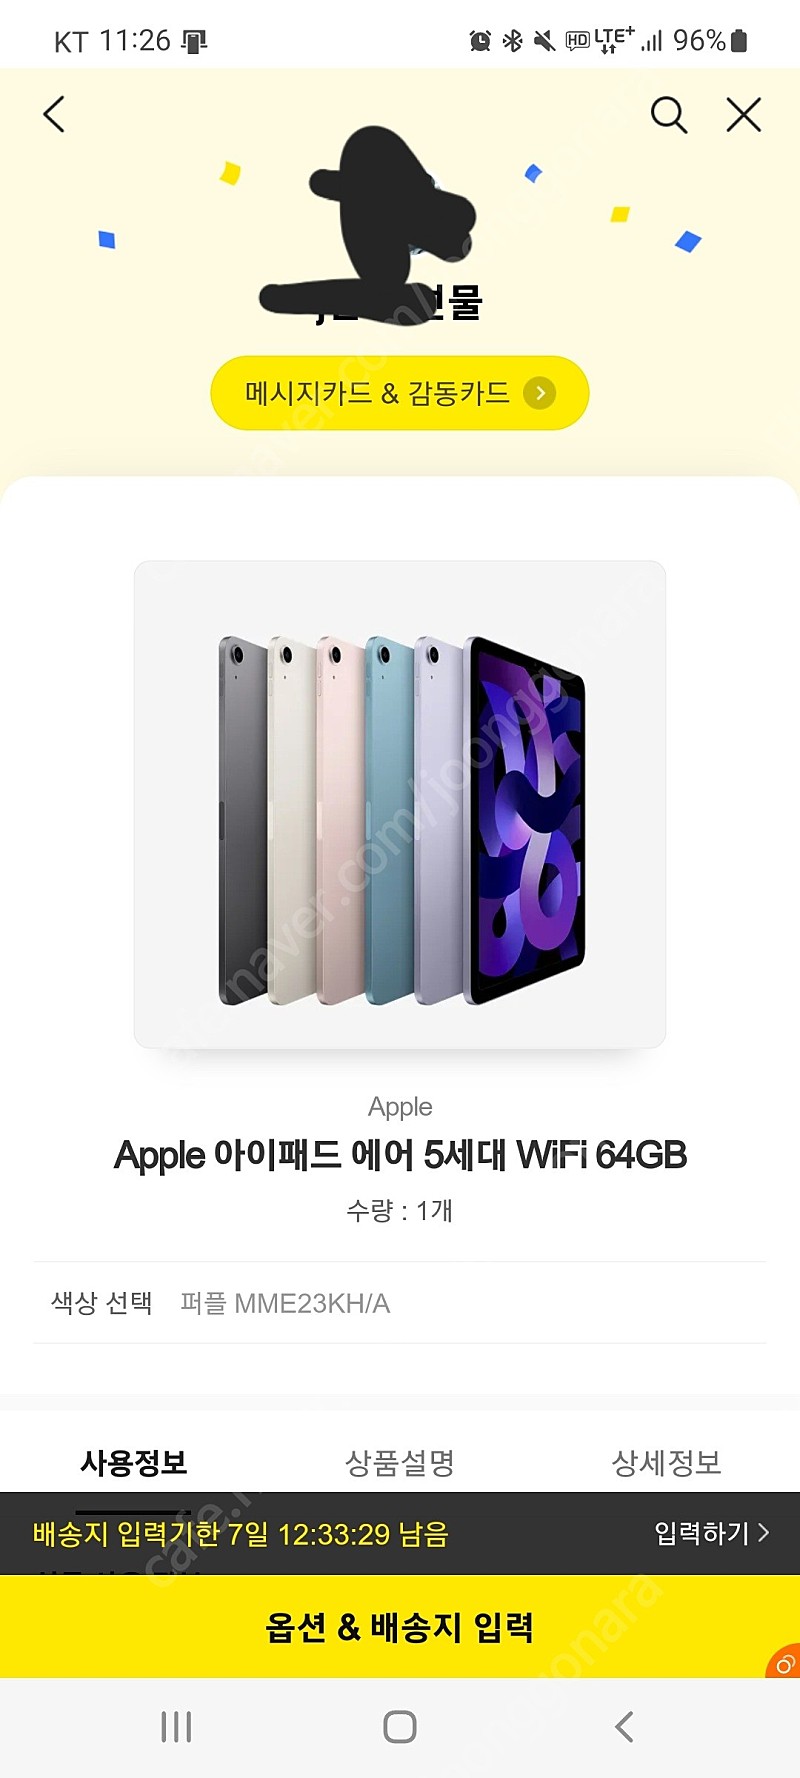 [71만원] 아이패드 에어 5세대 WiFi 64GB 퍼플 MME23KH/A 새제품 판매합니다.